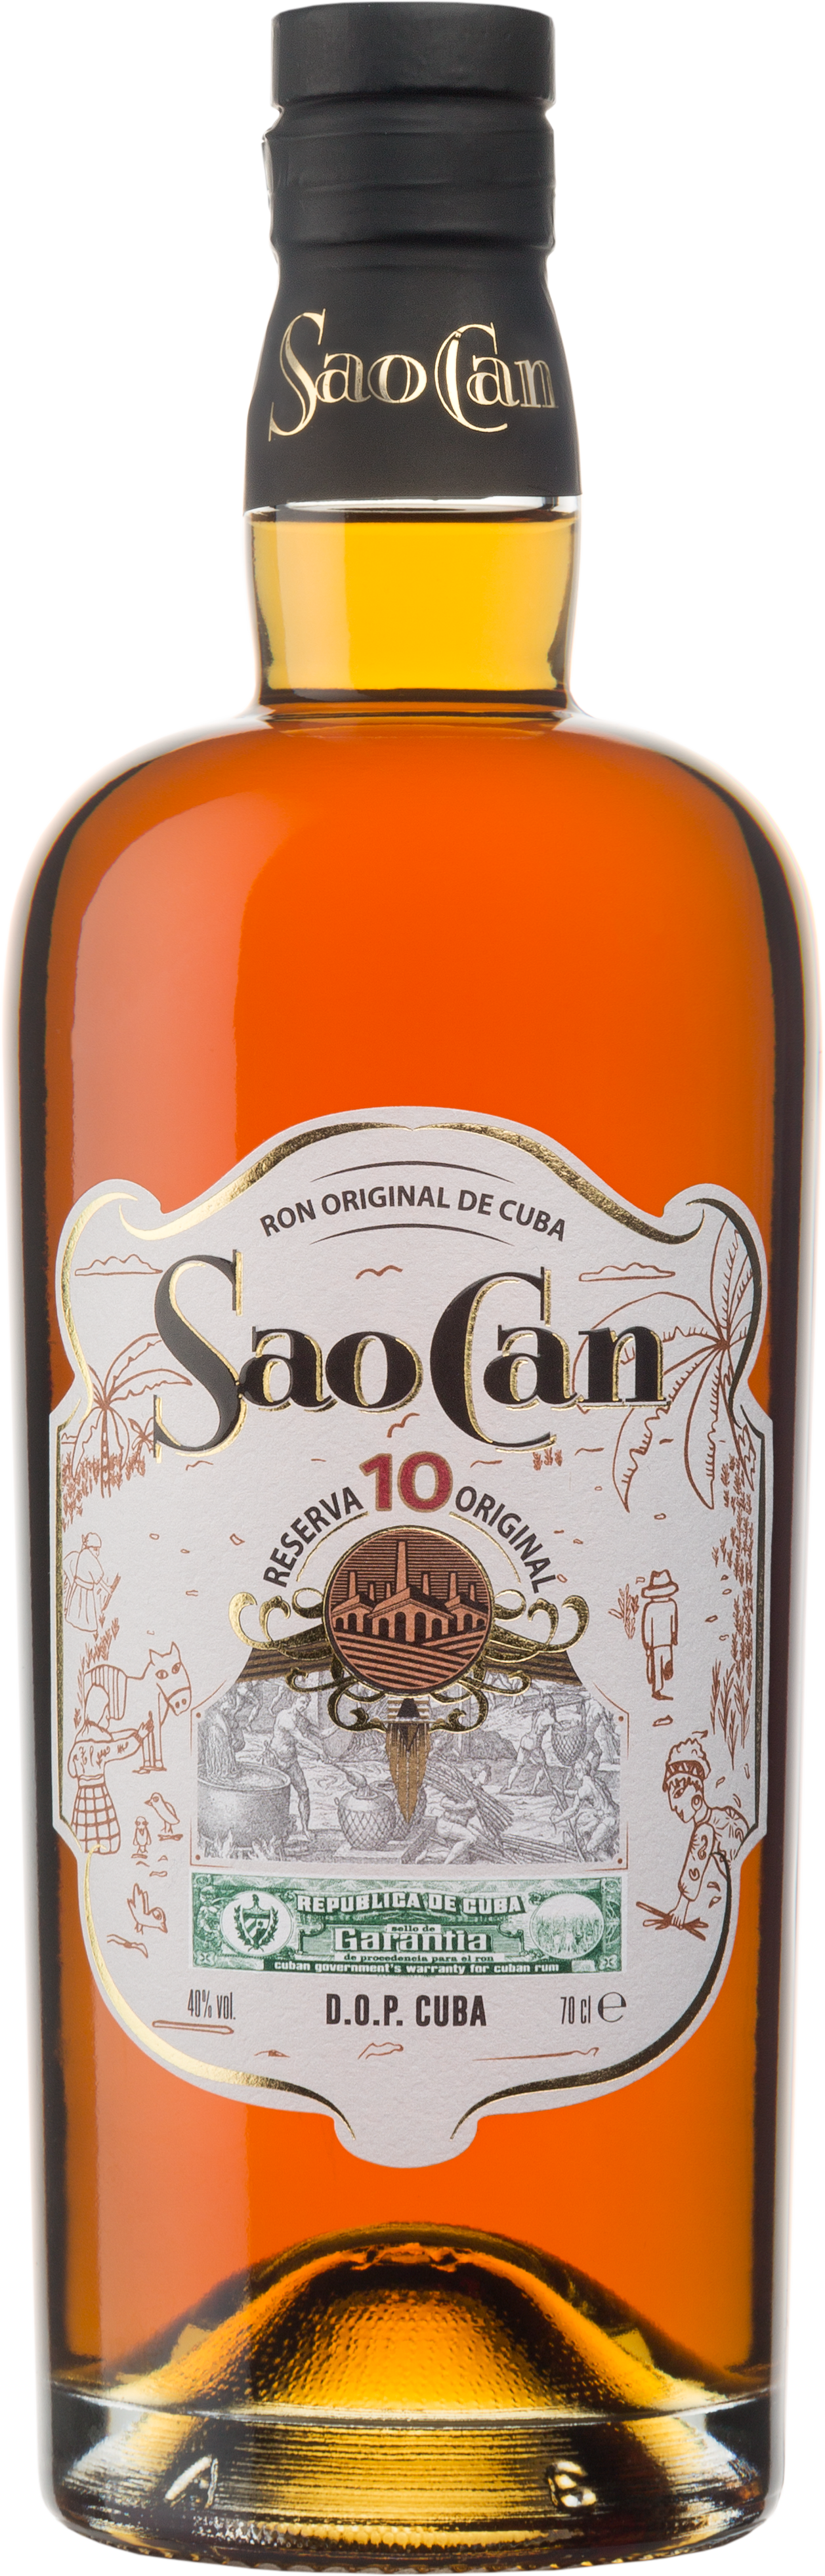 Sao Can Rum de Cuba Reserva 10 Jahre - 0,7l - 40% vol.